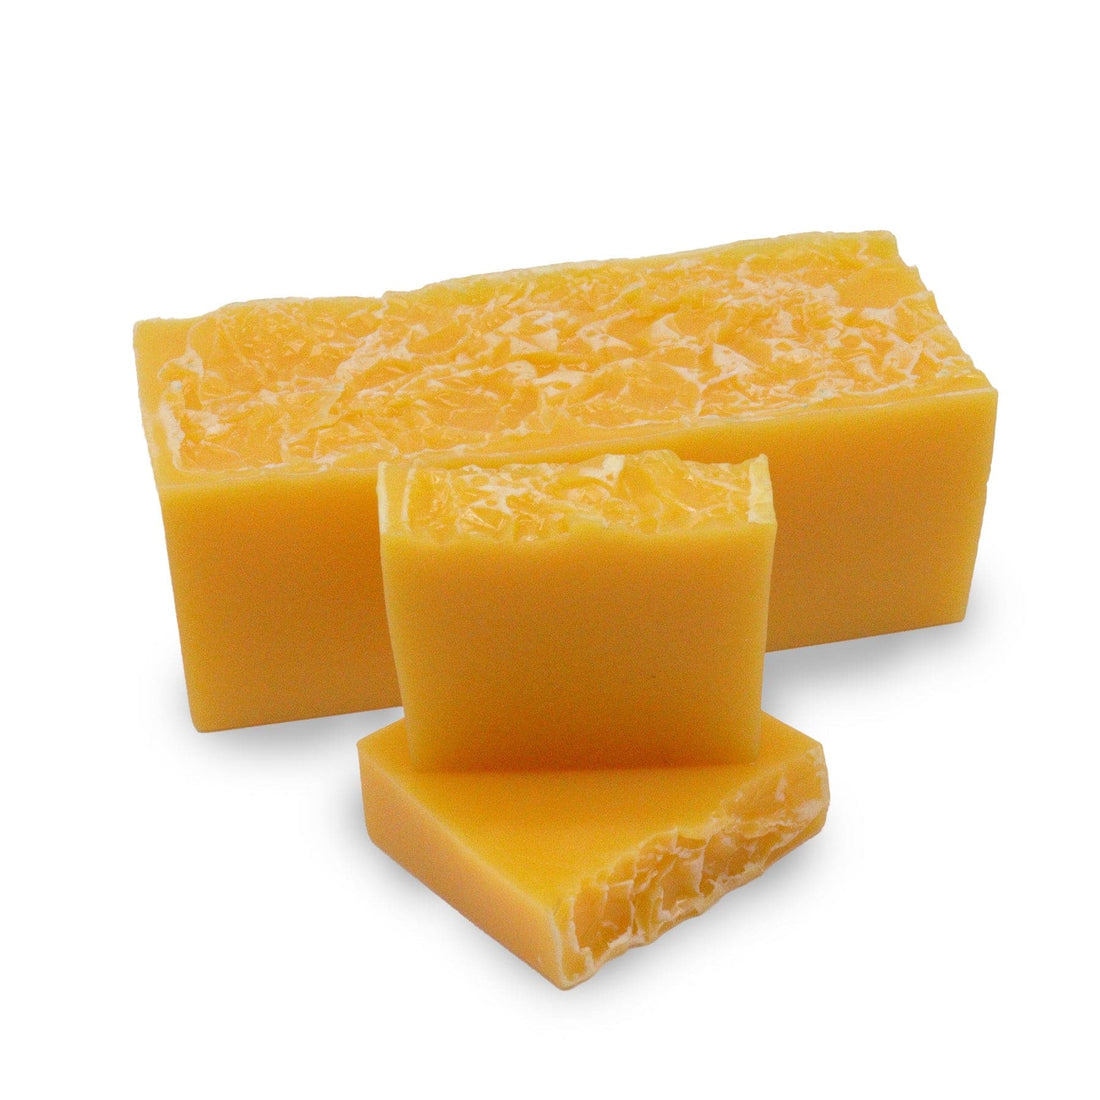 Mandarin & Honey Soap Bar - 100g - best price from Maltashopper.com DSHCS-54